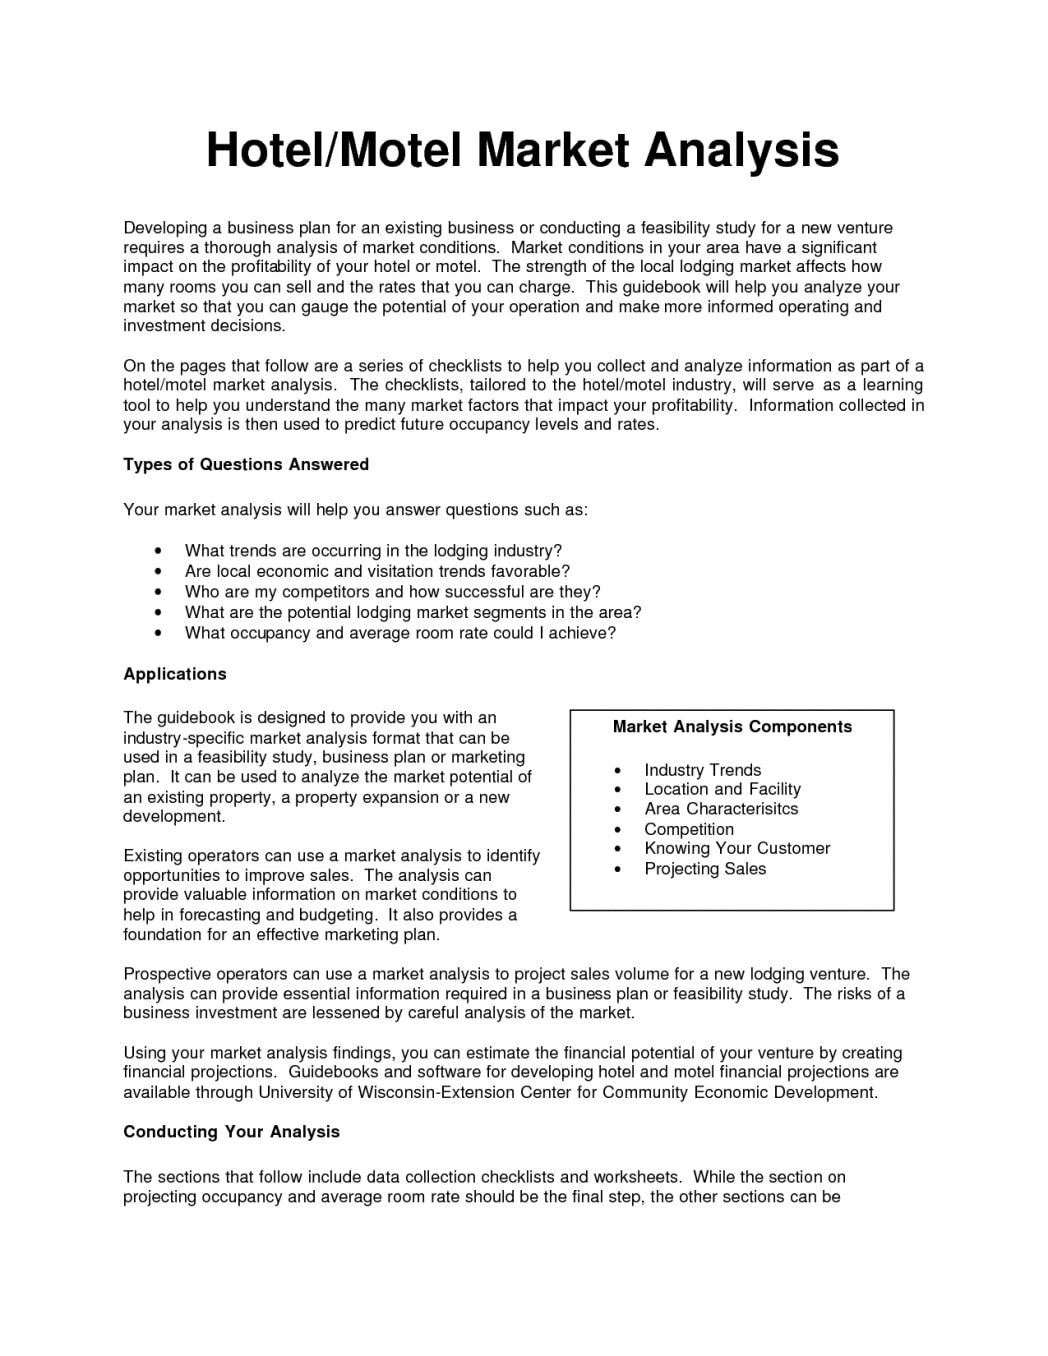 market analysis business plan pdf